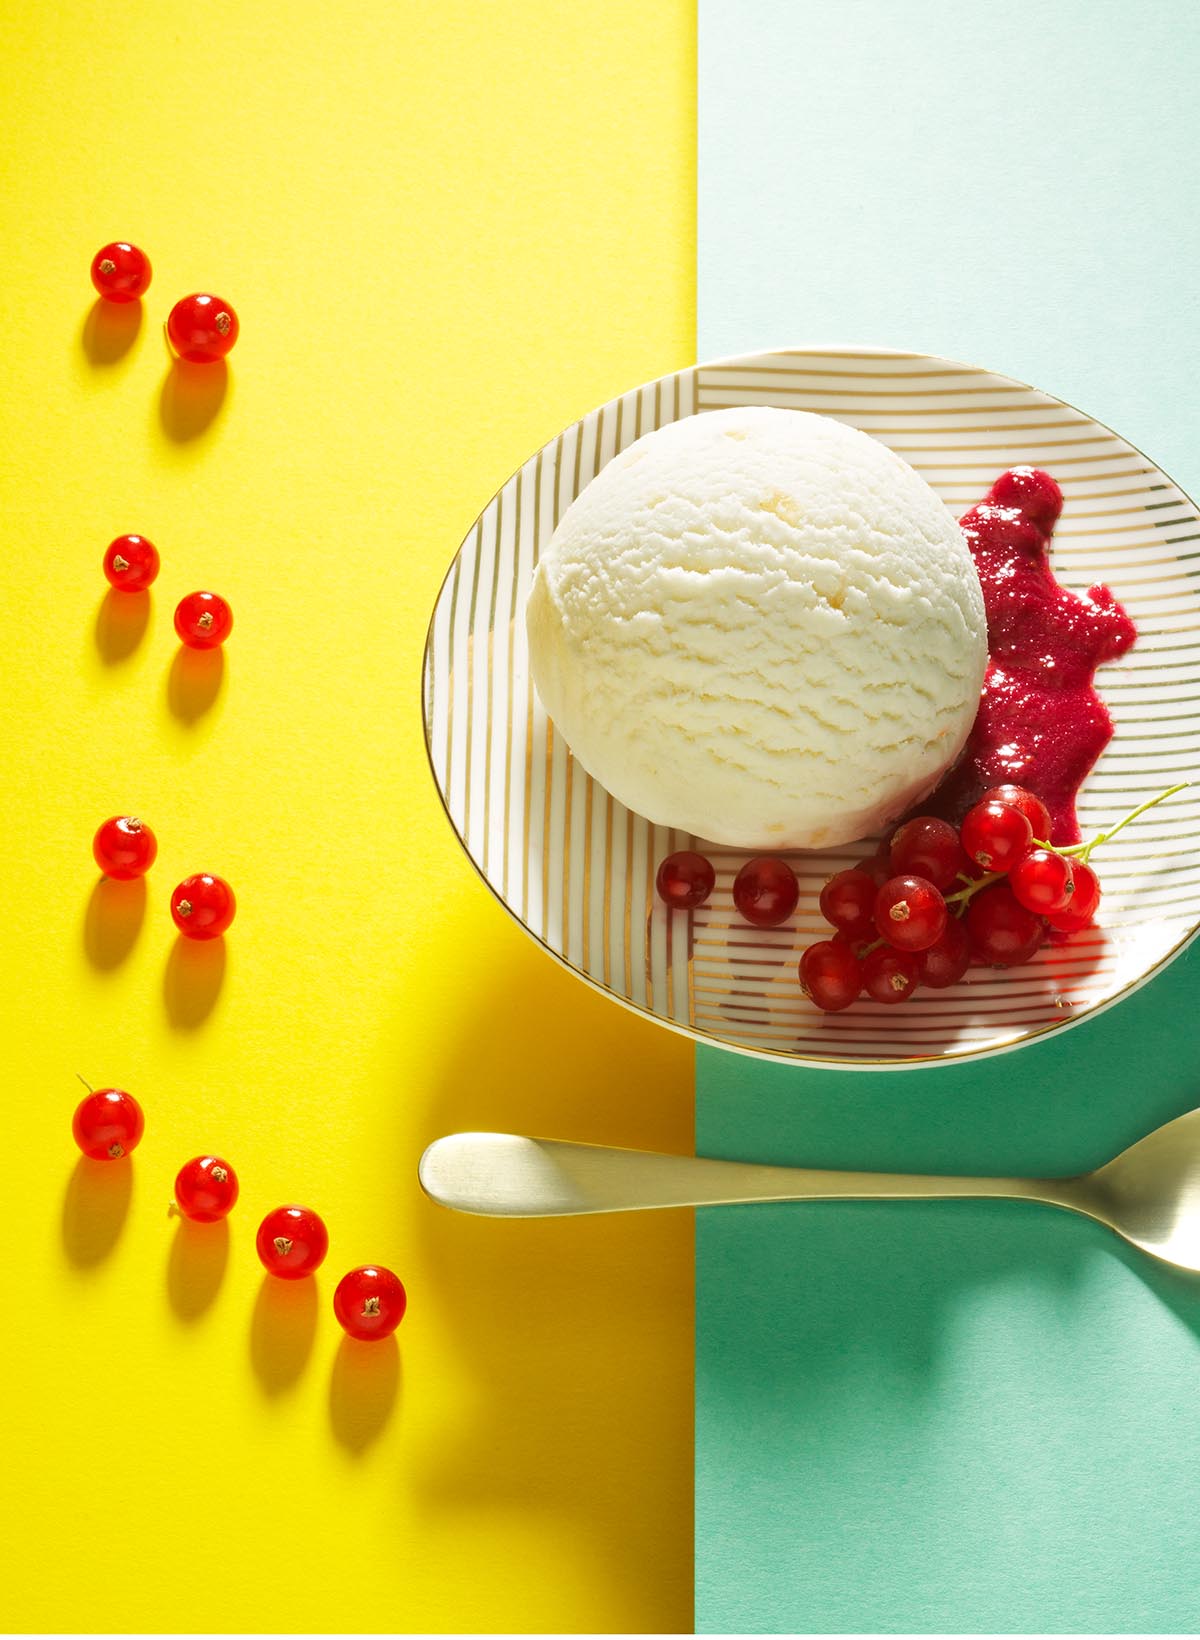 Food styling fotografie van een bord met vanille ijs icm cranberries en een lepel gemaakt door Studio_m Fotografie Amsterdam